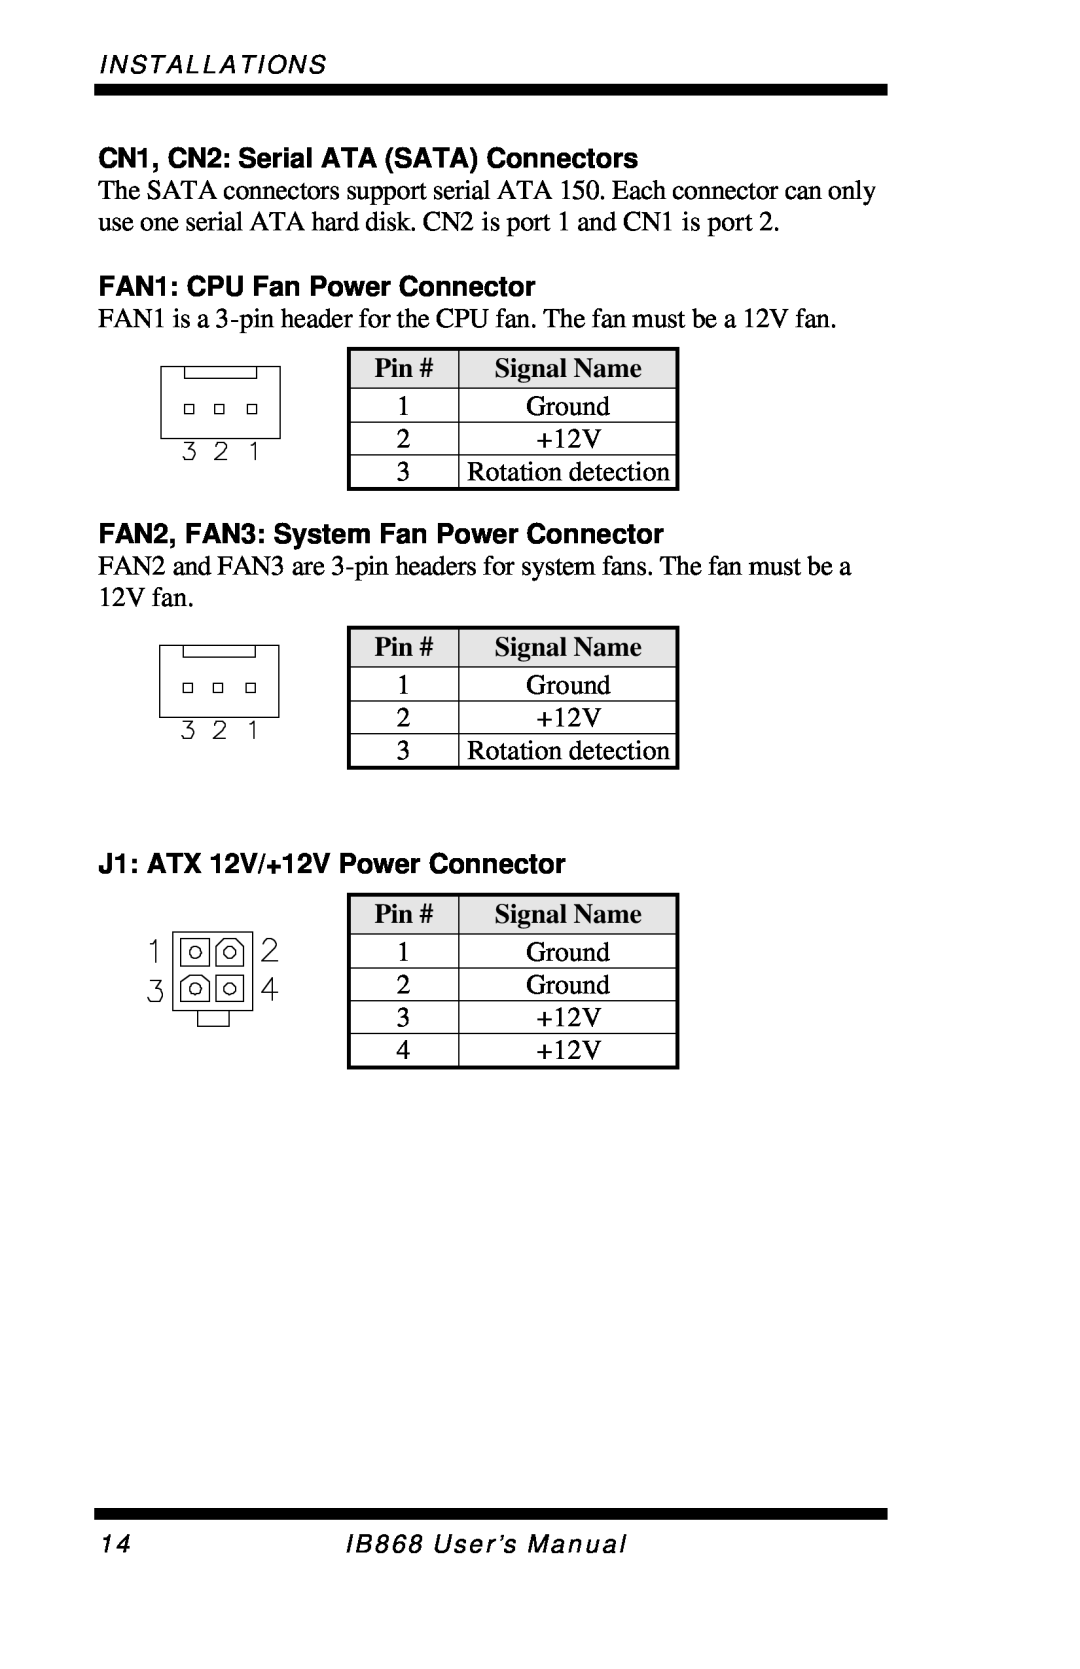 Intel IB868 CN1, CN2: Serial ATA SATA Connectors, FAN1: CPU Fan Power Connector, FAN2, FAN3: System Fan Power Connector 